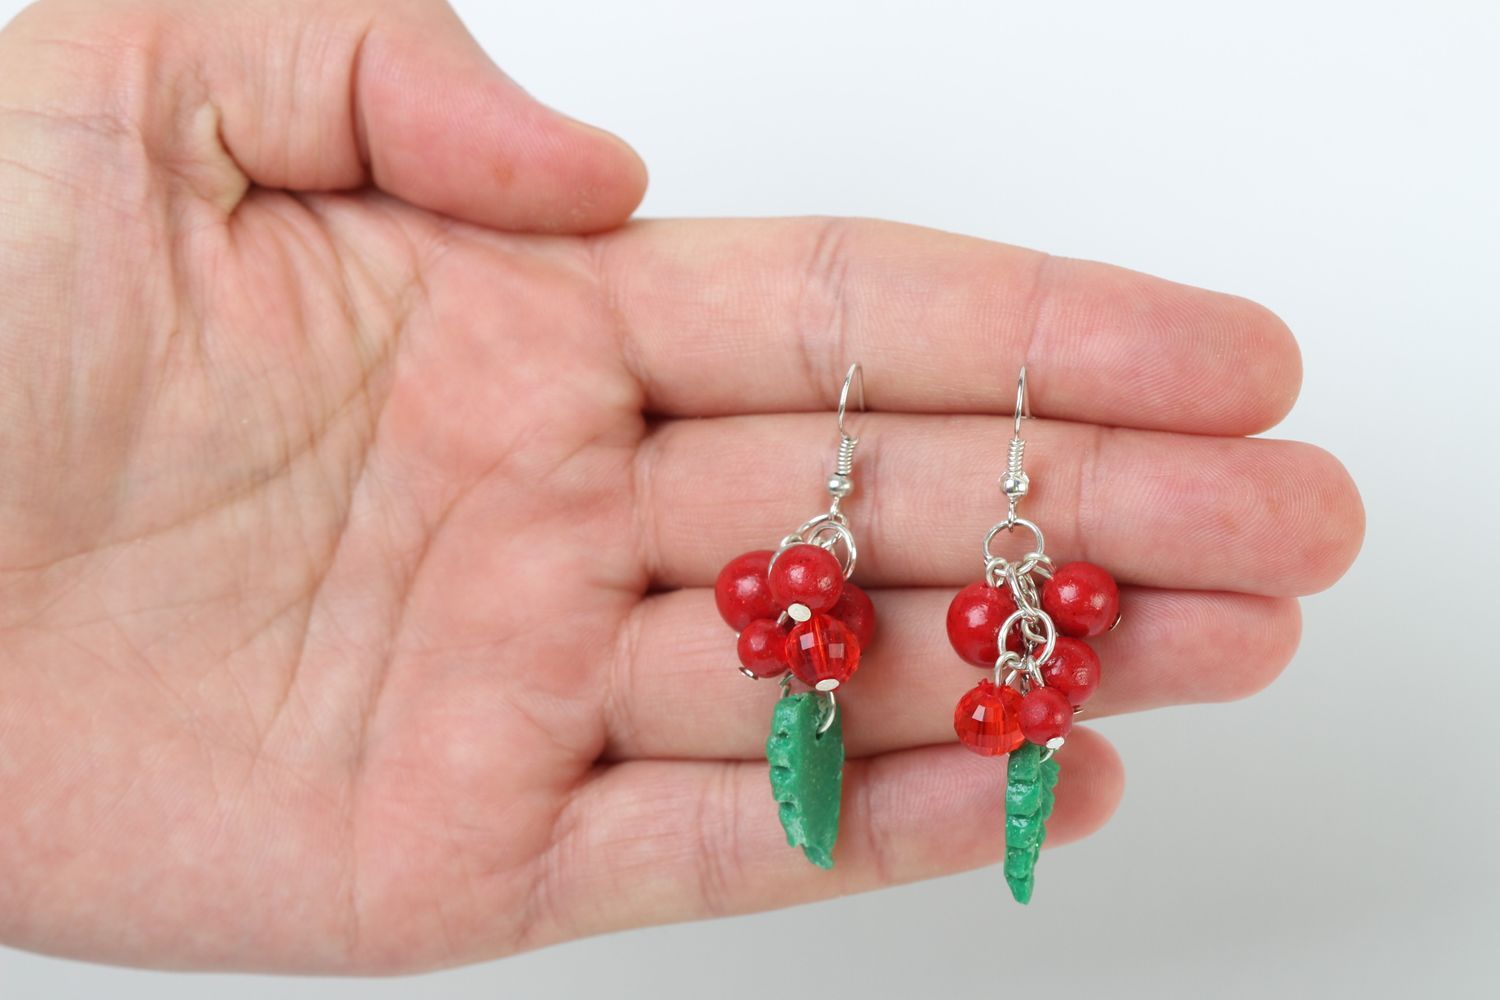 Handmade earrings unusual gift ideas women earrings designer accessory photo 5